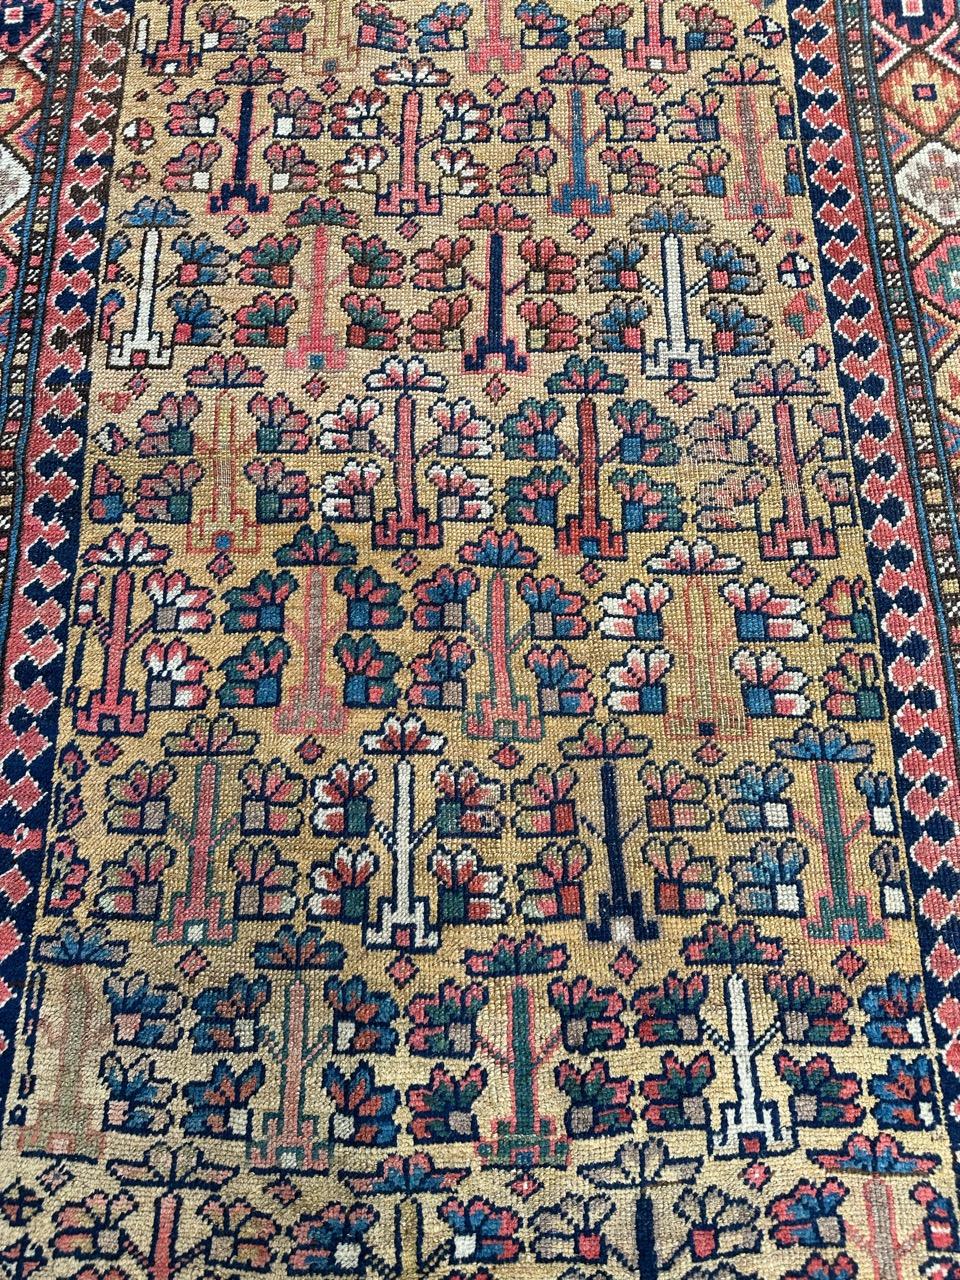 Tribal Merveilleux tapis tribal ancien de collection kurde ou caucasien en vente